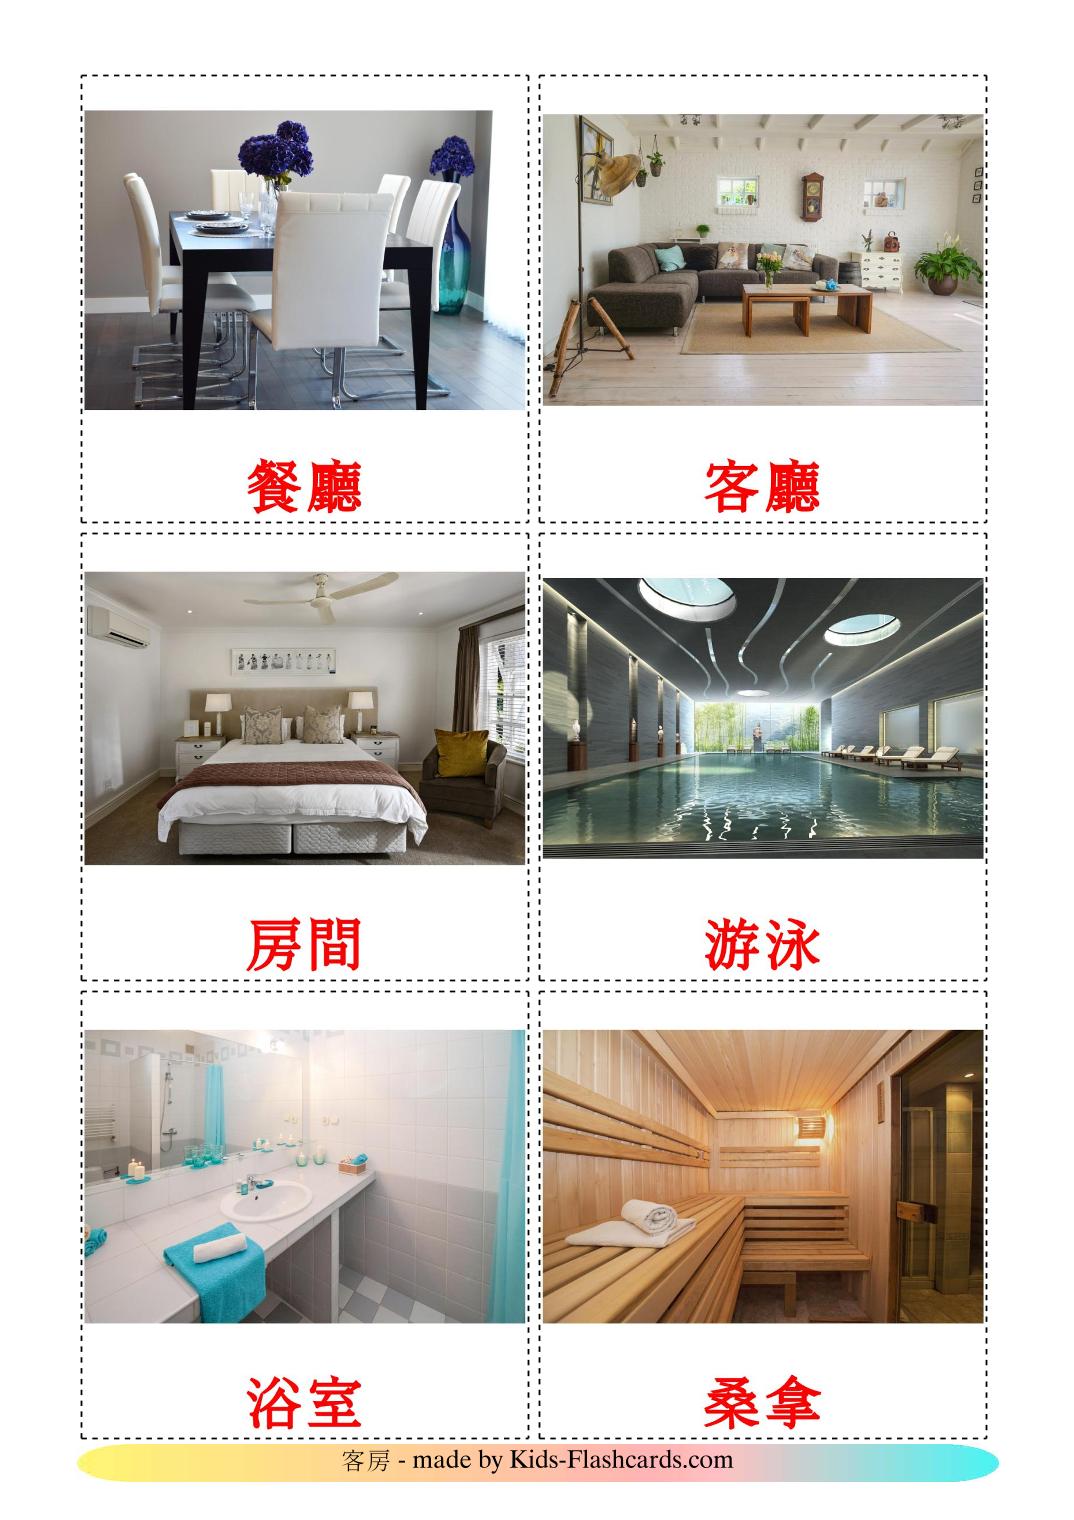 Habitaciones  - 17 fichas de chino(tradicional) para imprimir gratis 